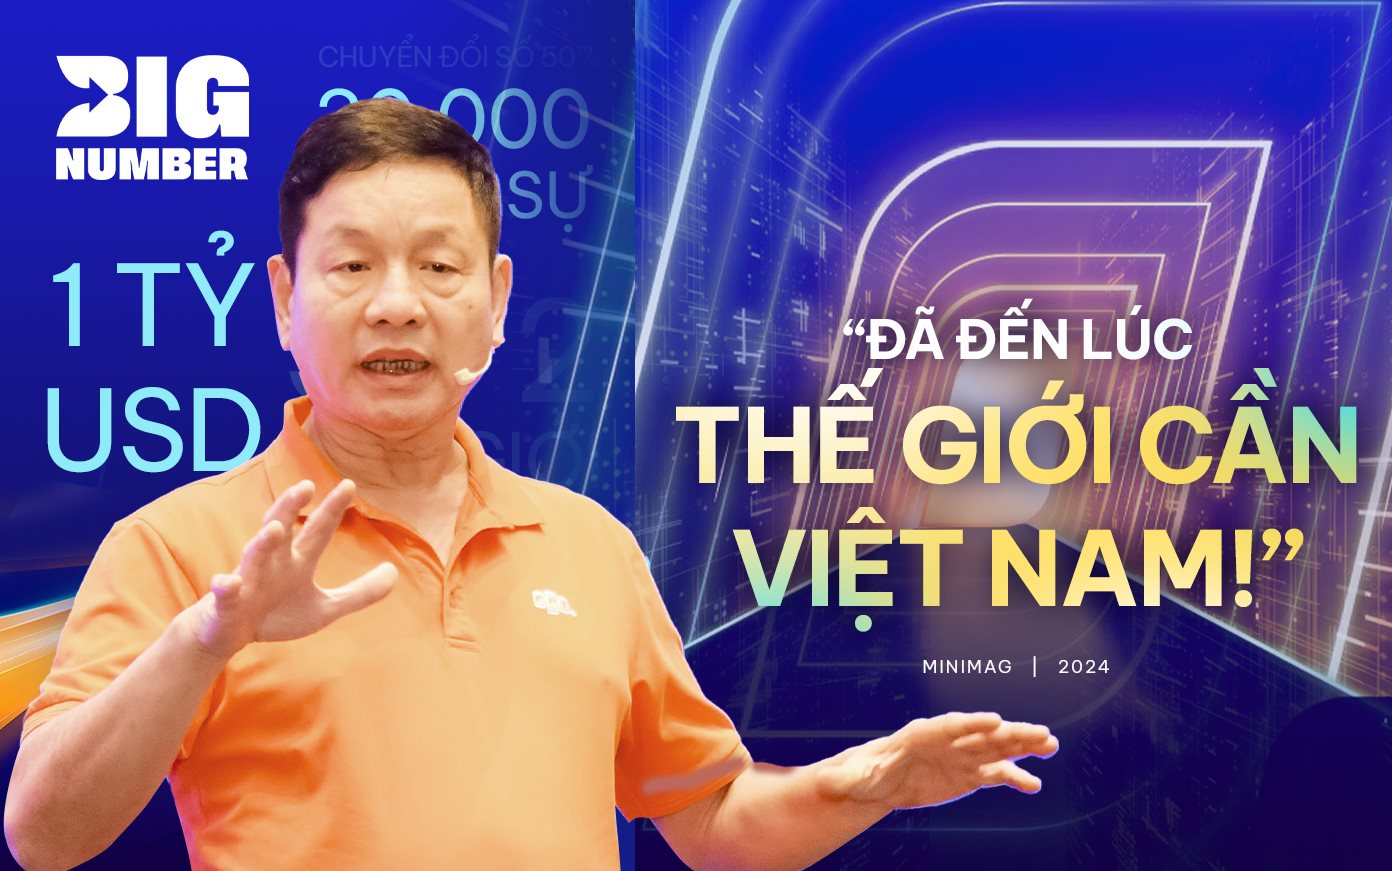 1 tỷ USD, 30.000 nhân sự và nhận định của Chủ tịch FPT Trương Gia Bình: “Đã đến lúc thế giới cần Việt Nam!”